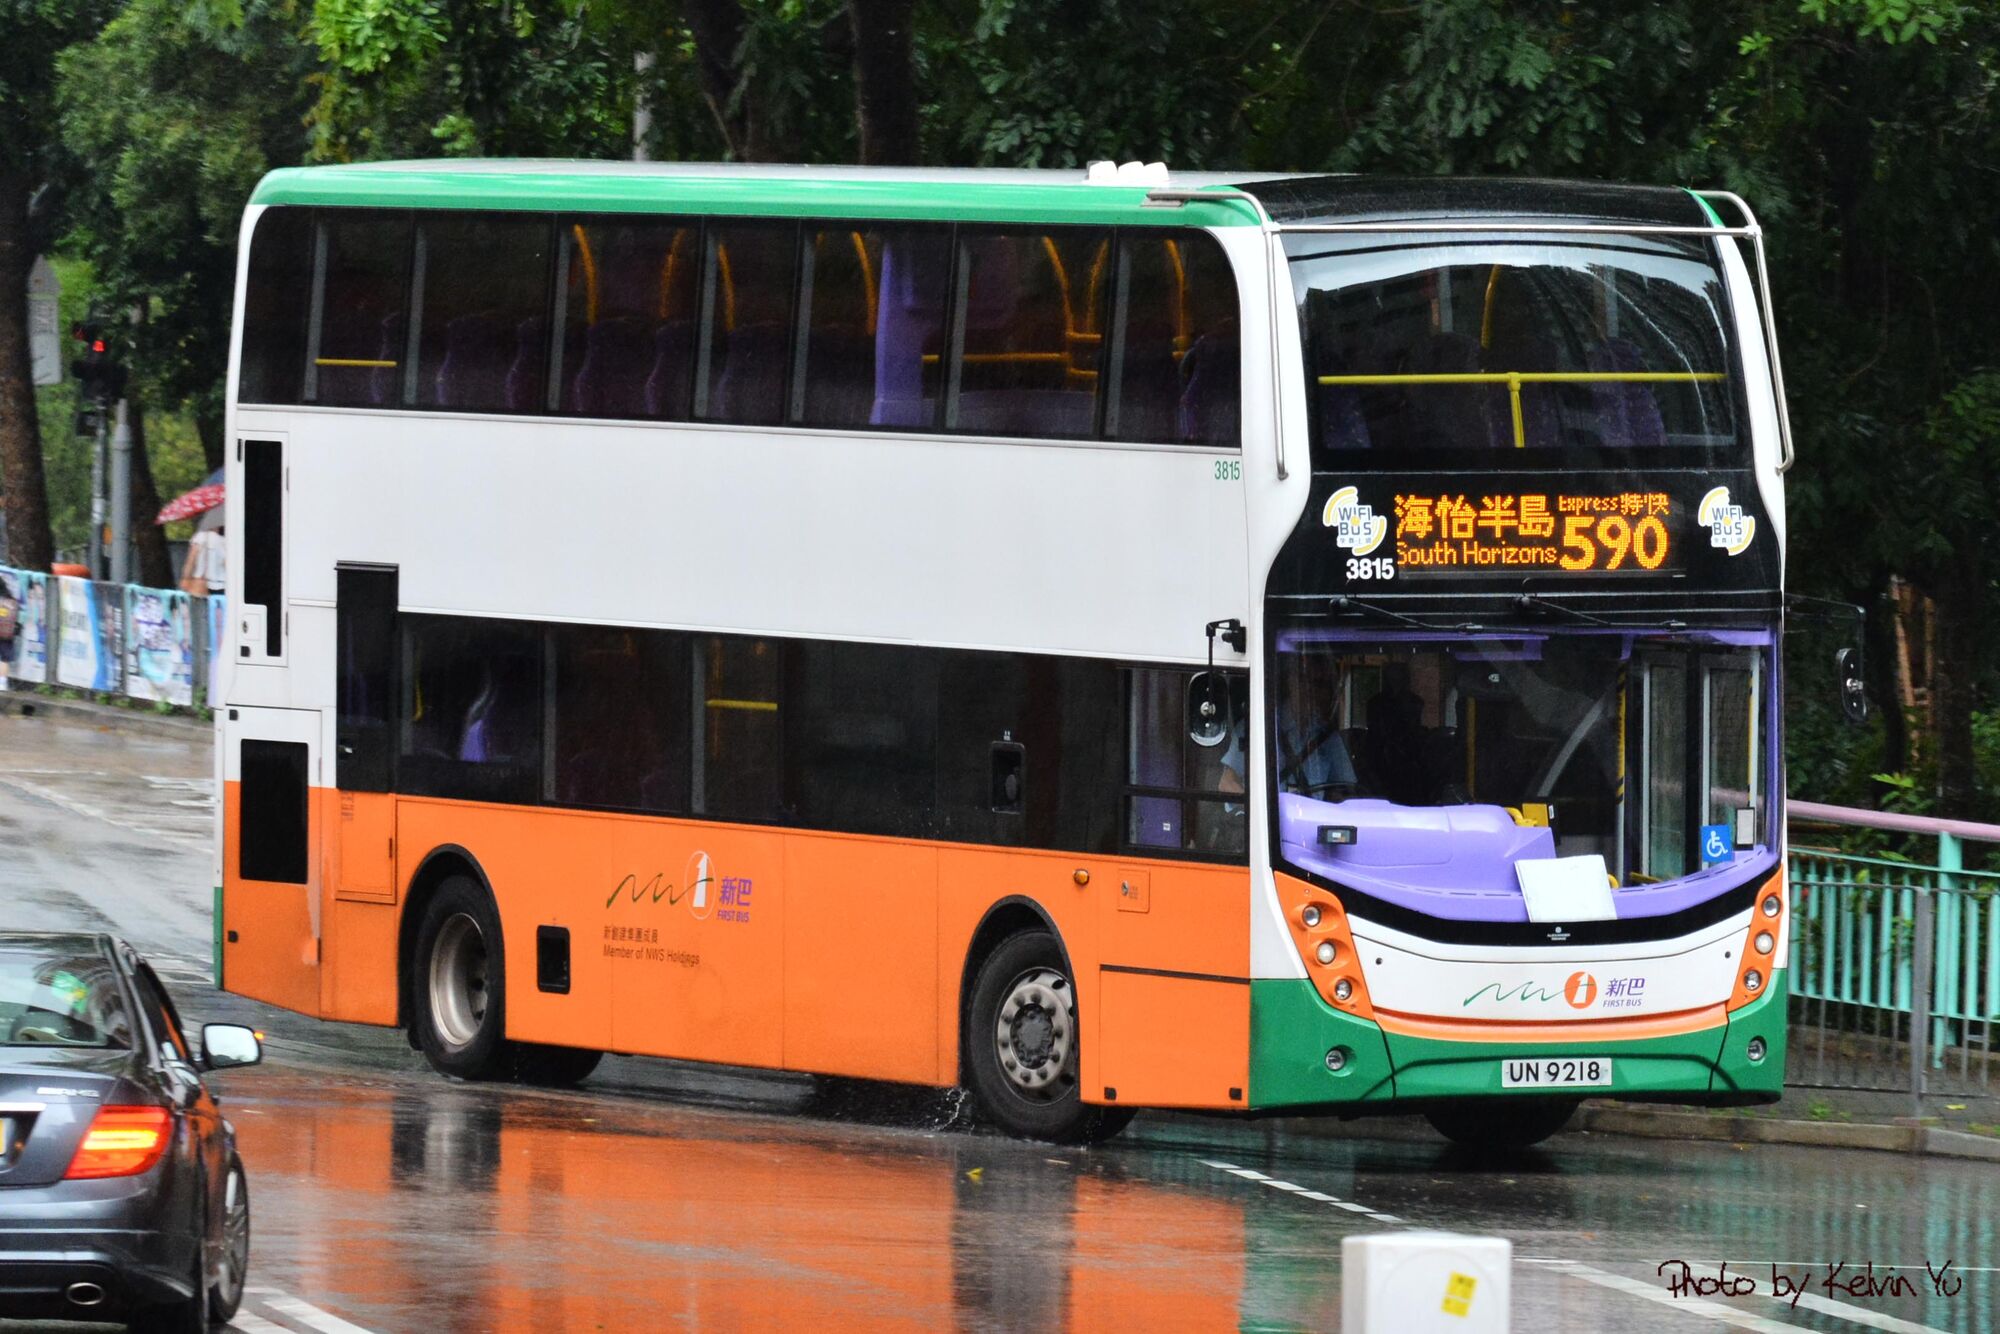 AA48-GS9019復出行270 - 巴士攝影作品貼圖區 (B3) - hkitalk.net 香港交通資訊網 - Powered by ...